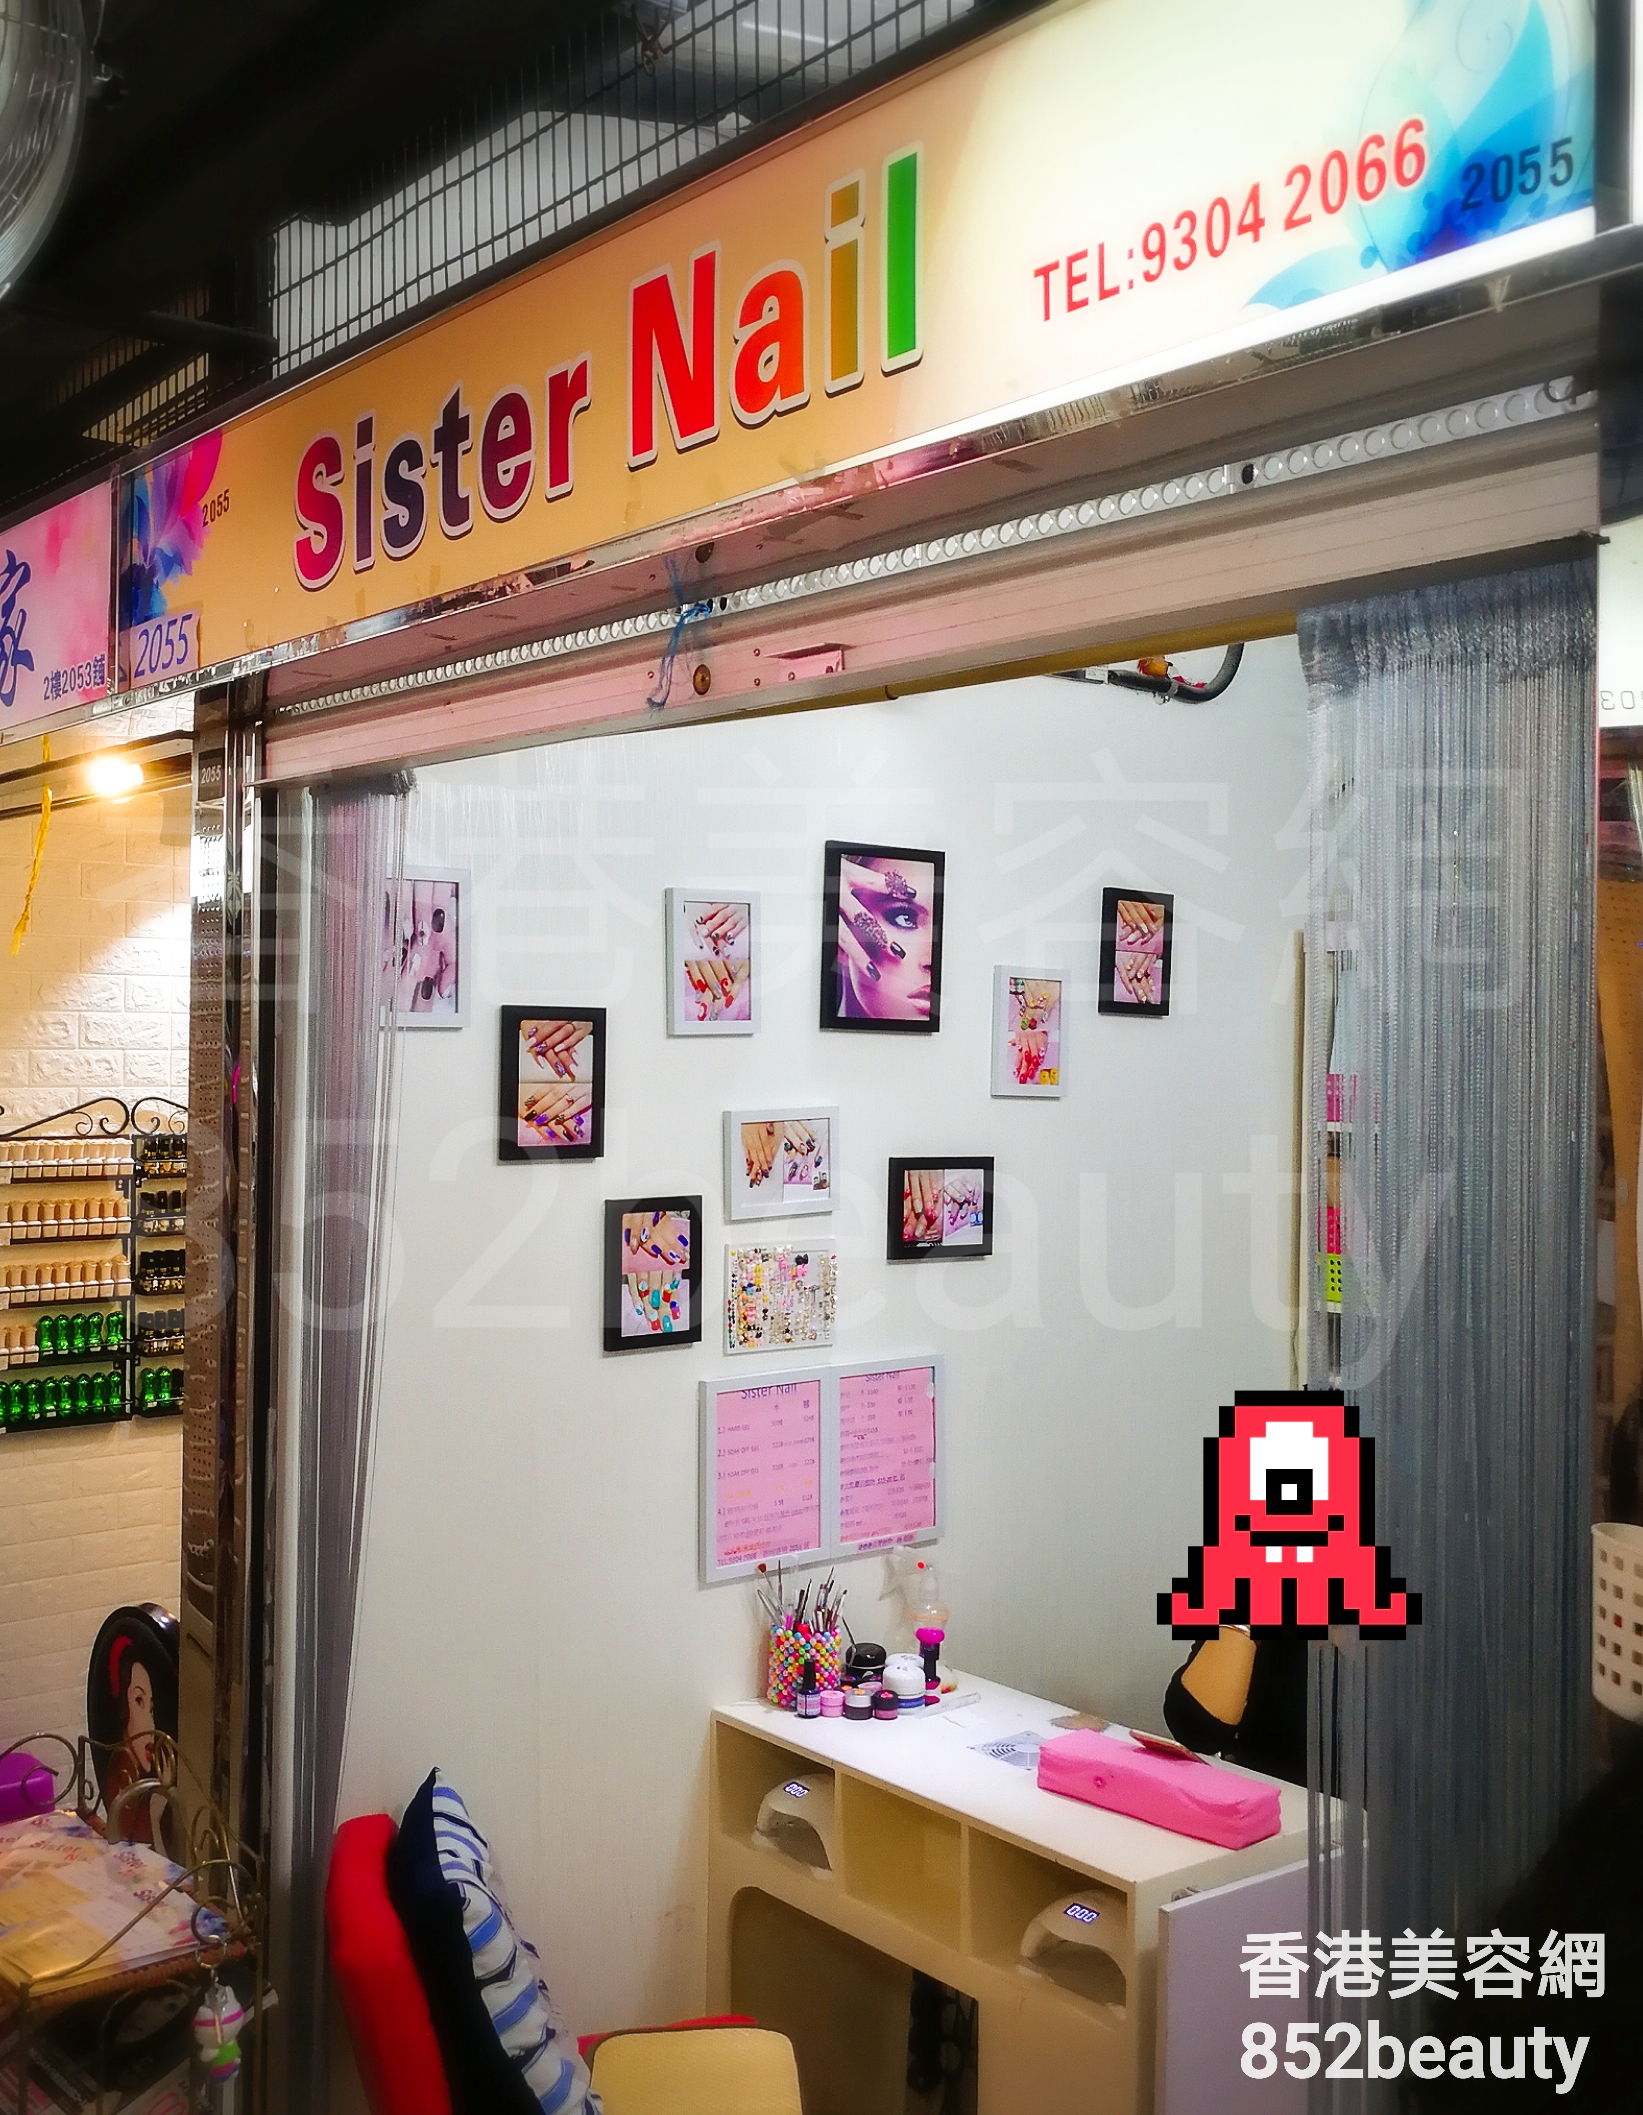 美容院 Beauty Salon: Sister Nail